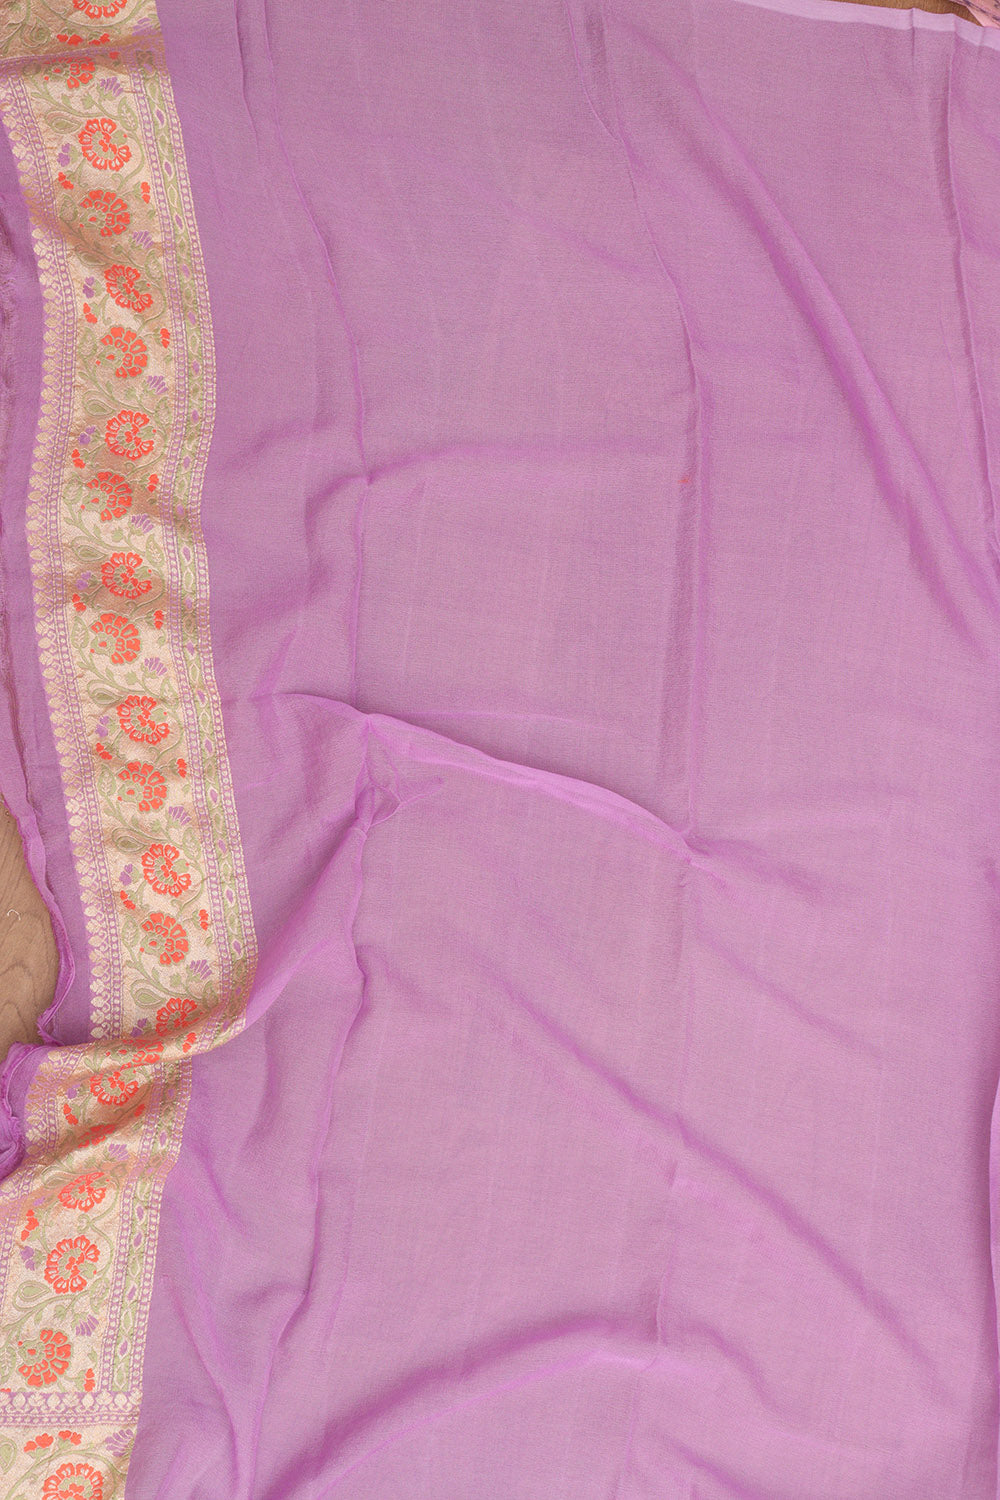 Purple Banarasi Handloom Pure Georgette Meenakari Saree - Luxurion World